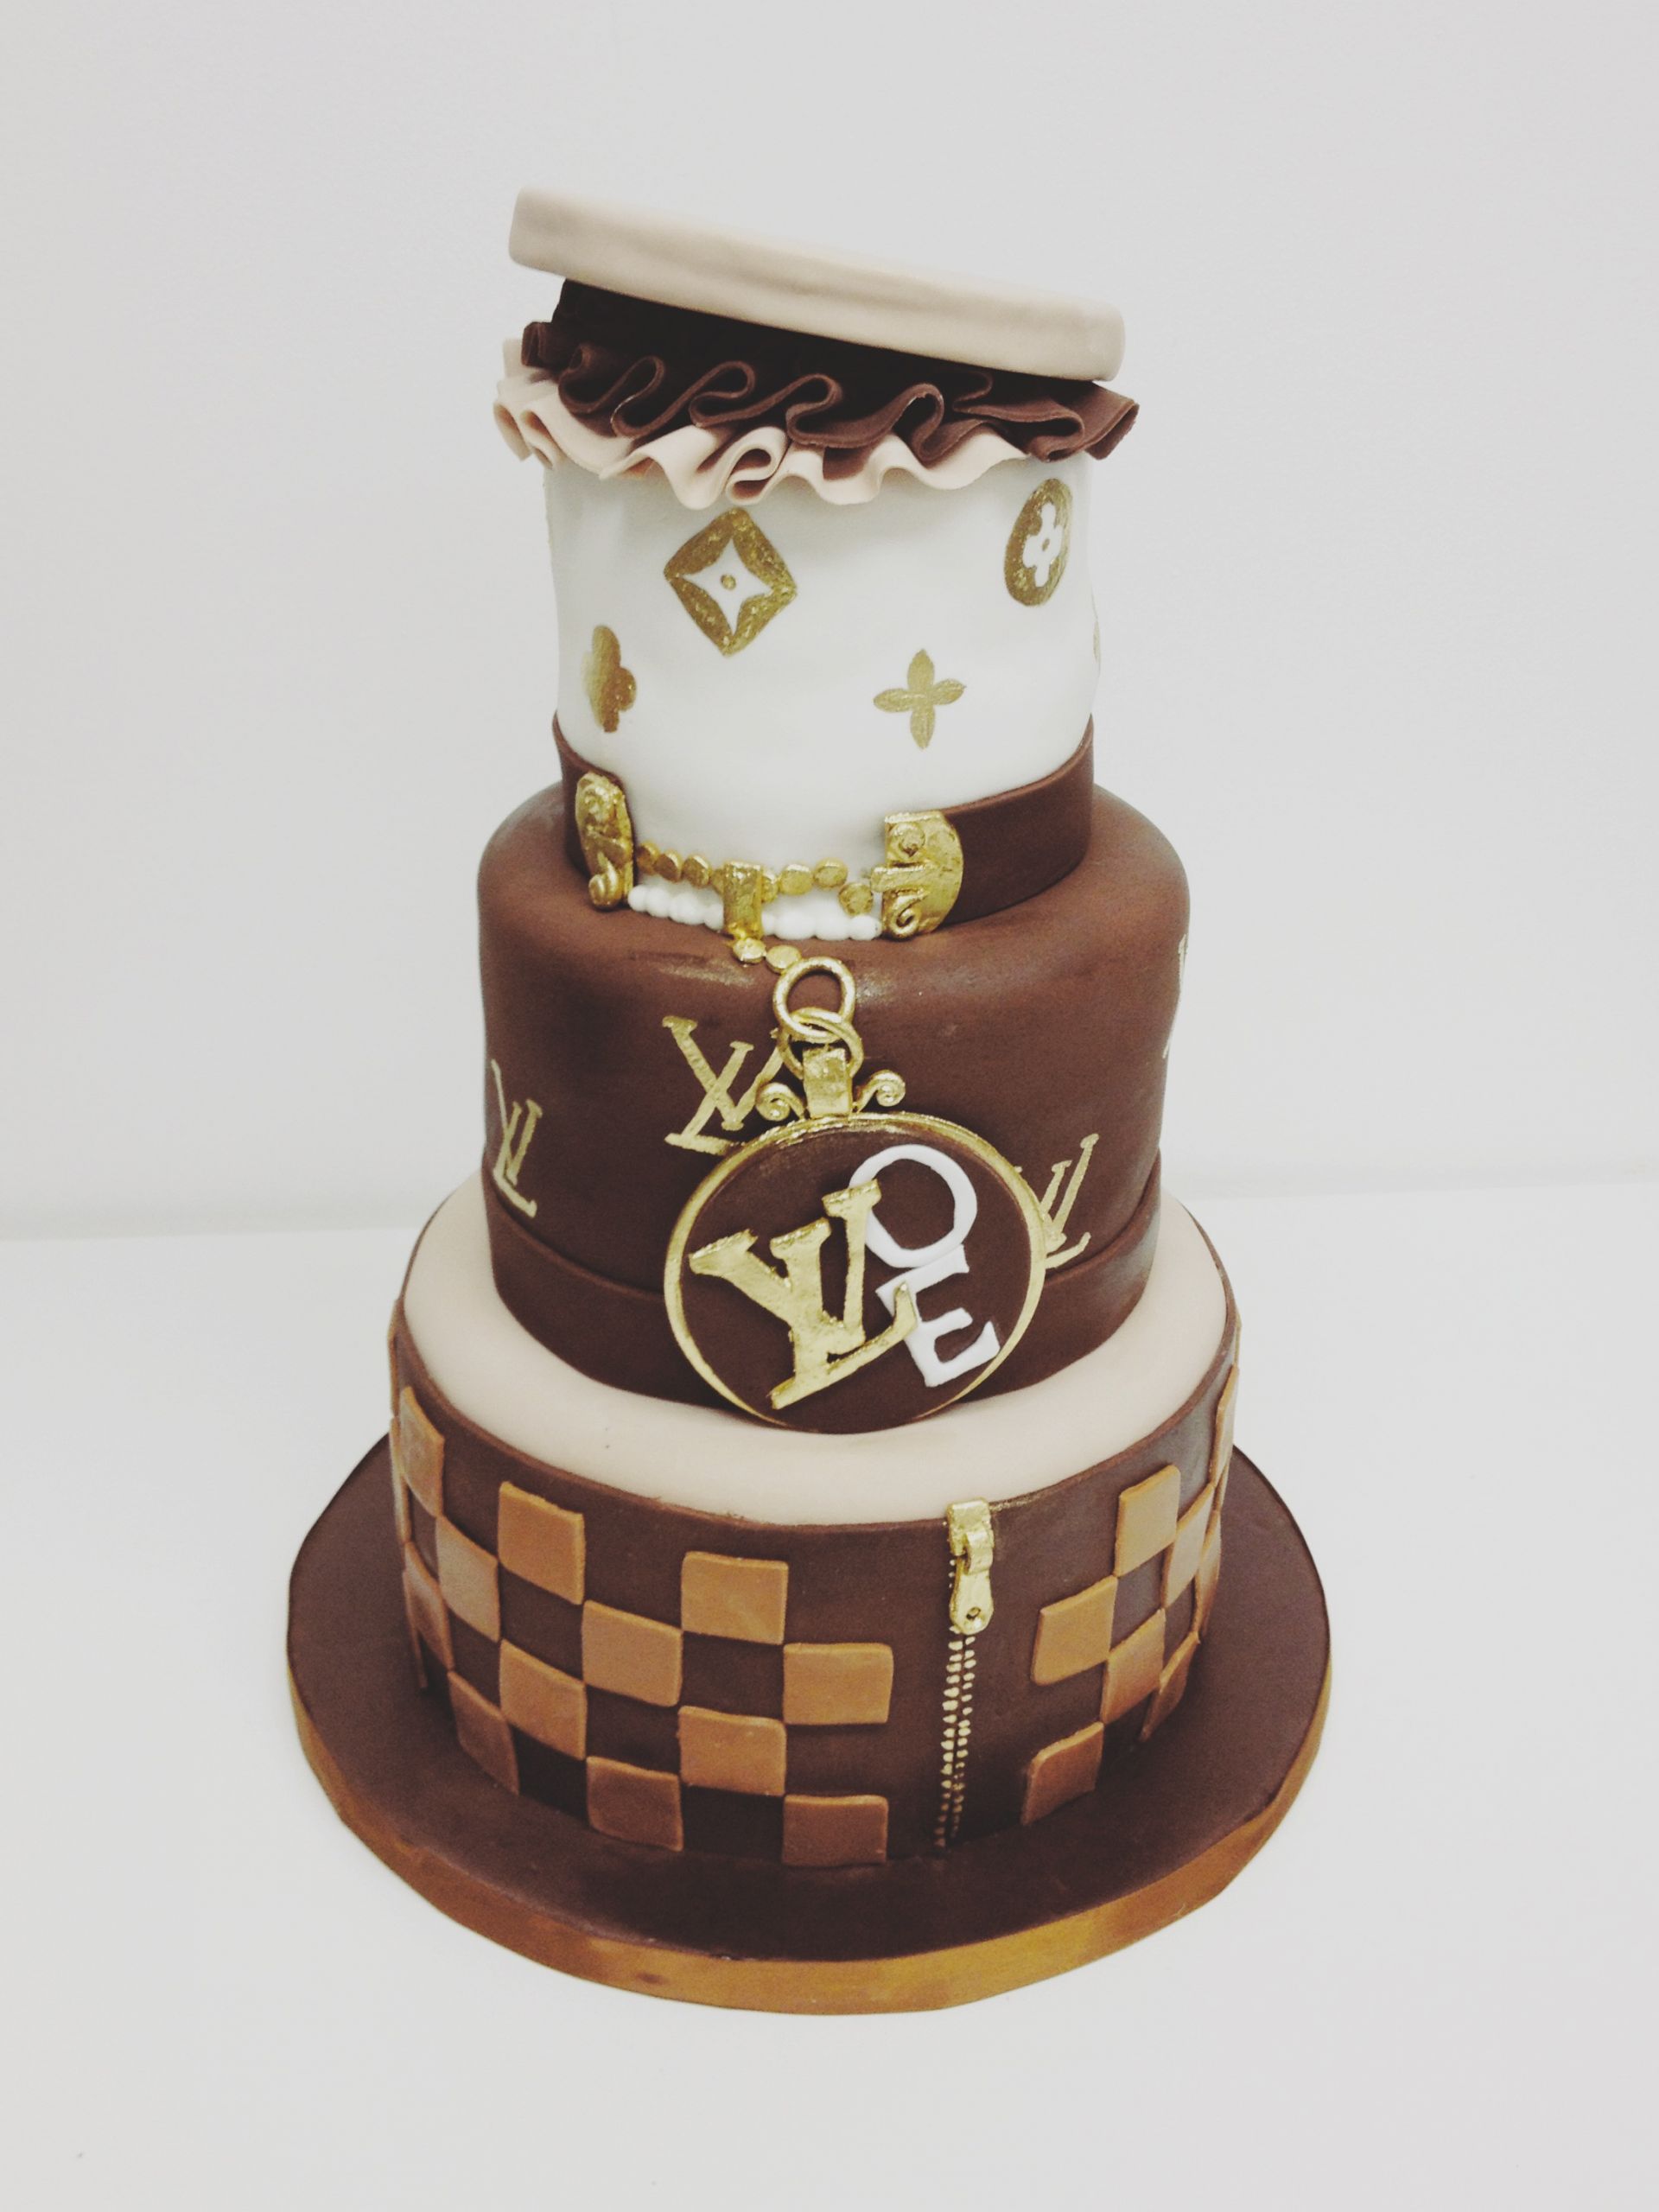 Louis Vuitton Birthday Cakes
 Louis Vuitton Cake